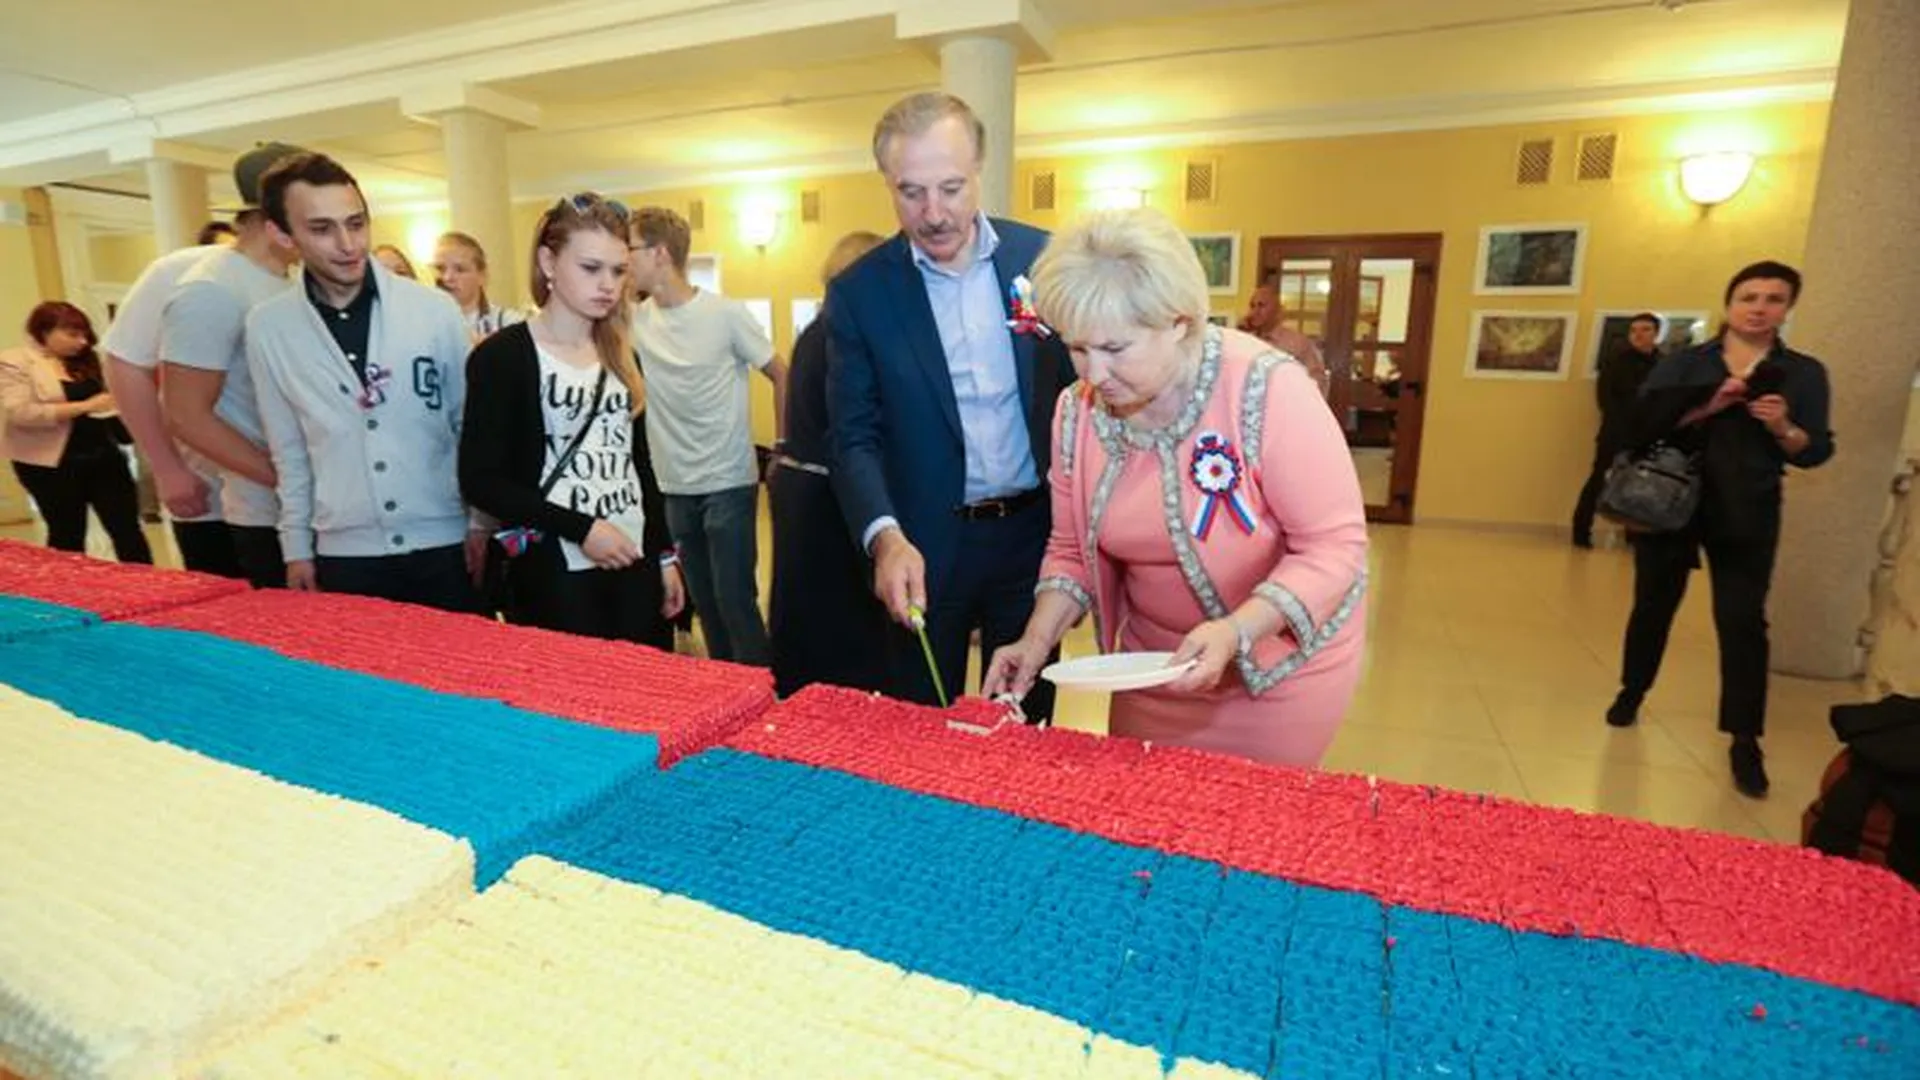 В честь Дня России люберецкие кондитеры испекли огромный торт в виде флага РФ